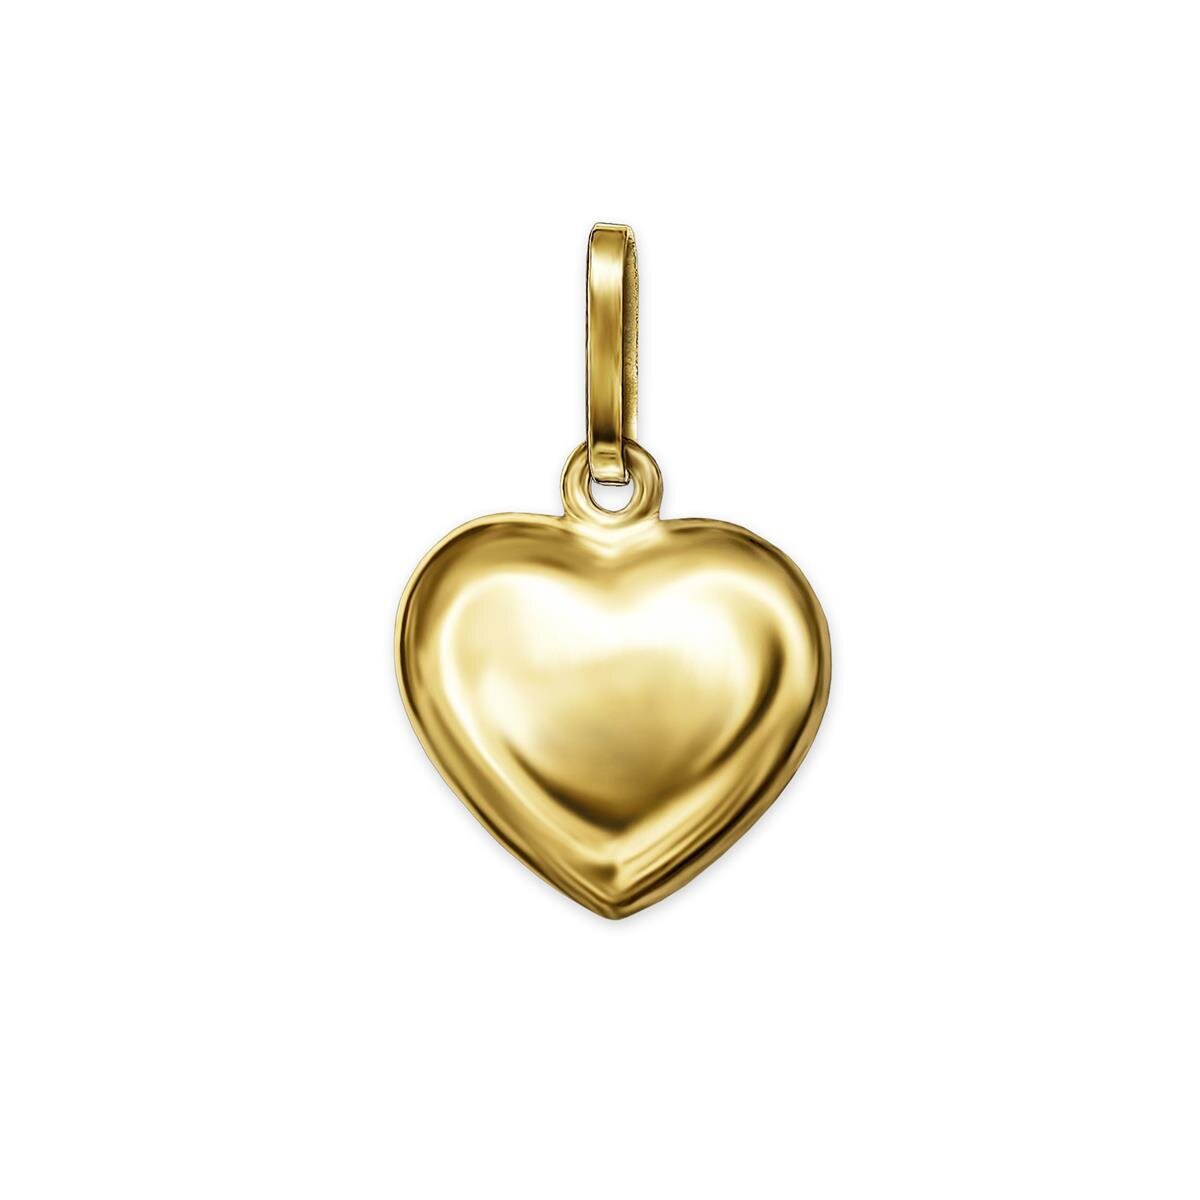 Goldener Anhänger Mini Herz 6 mm schlicht beidseitig gewölbte Form 333 Gold